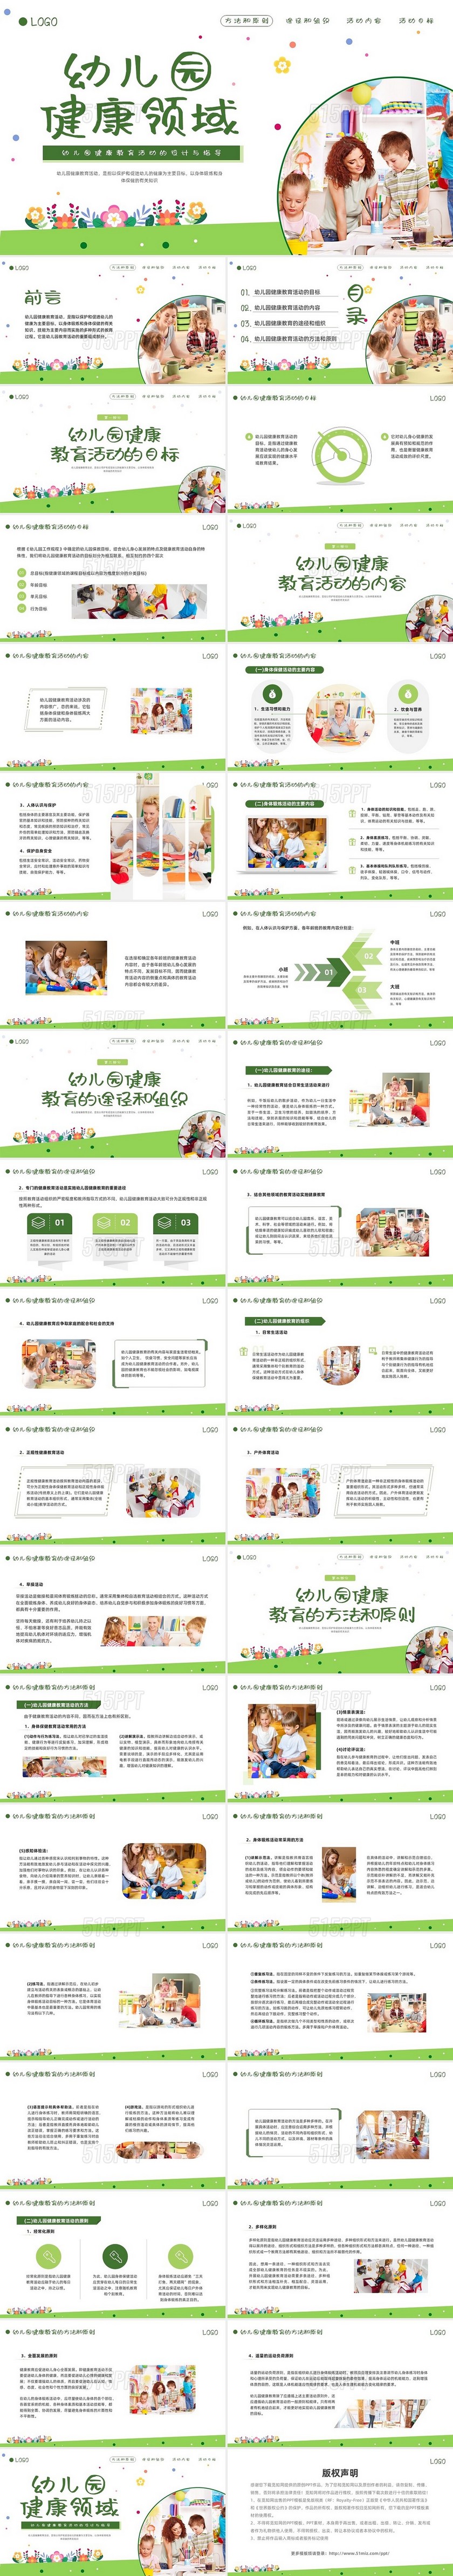 绿色商务幼儿园健康教育活动的设计与指导PPT模板宣传PPT幼儿园教师培训